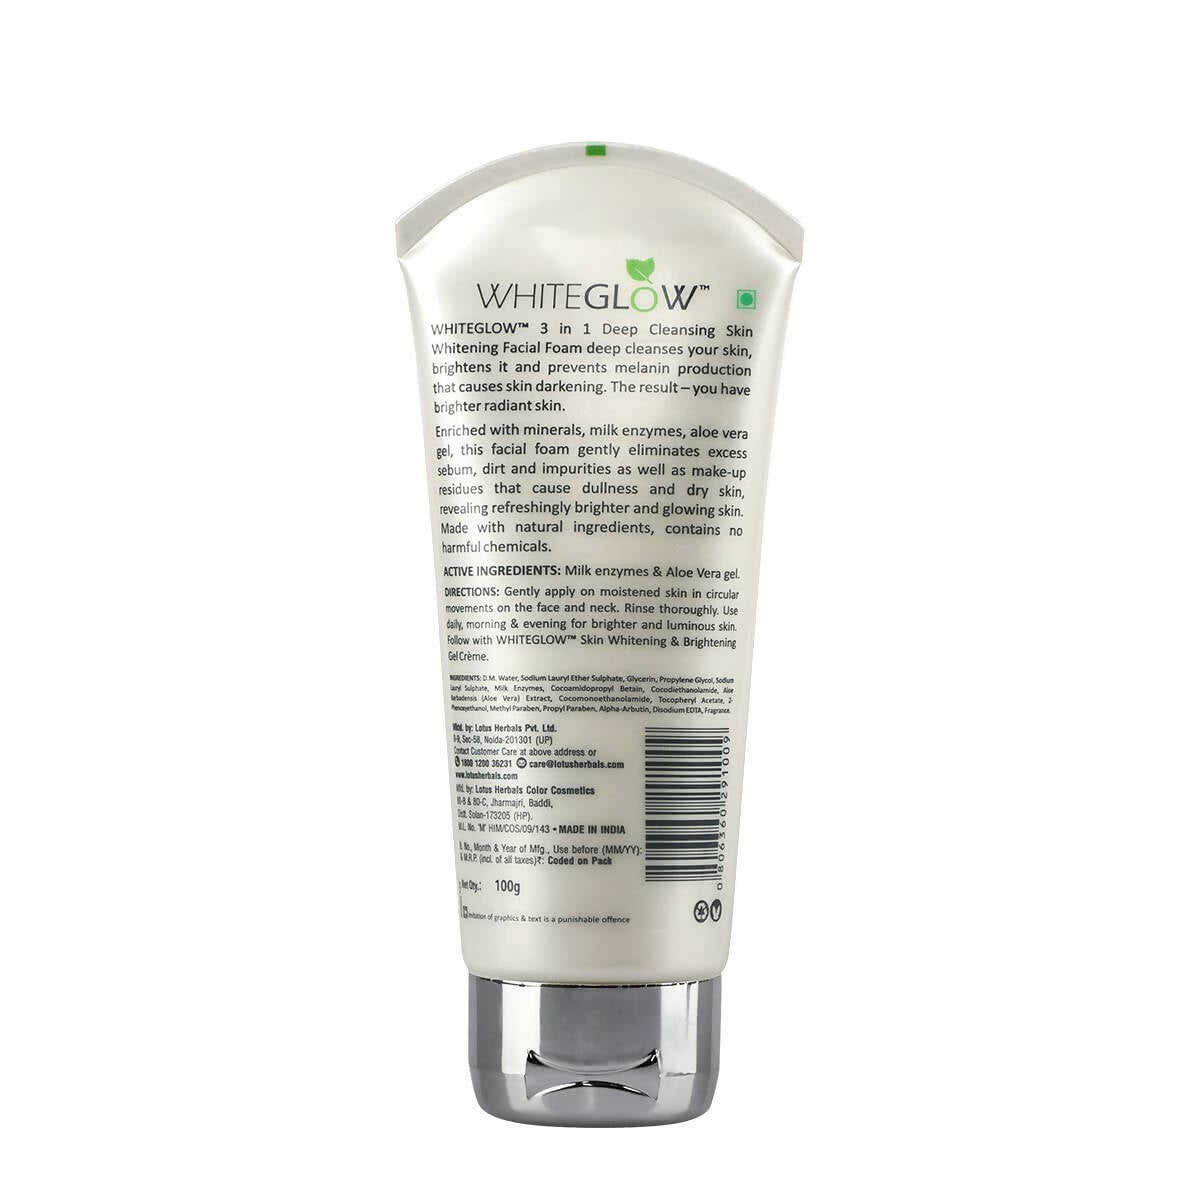 Lotus Herbals WhiteGlow 3-In-1 Deep Cleansing Skin Whitening Face Wash - Distacart